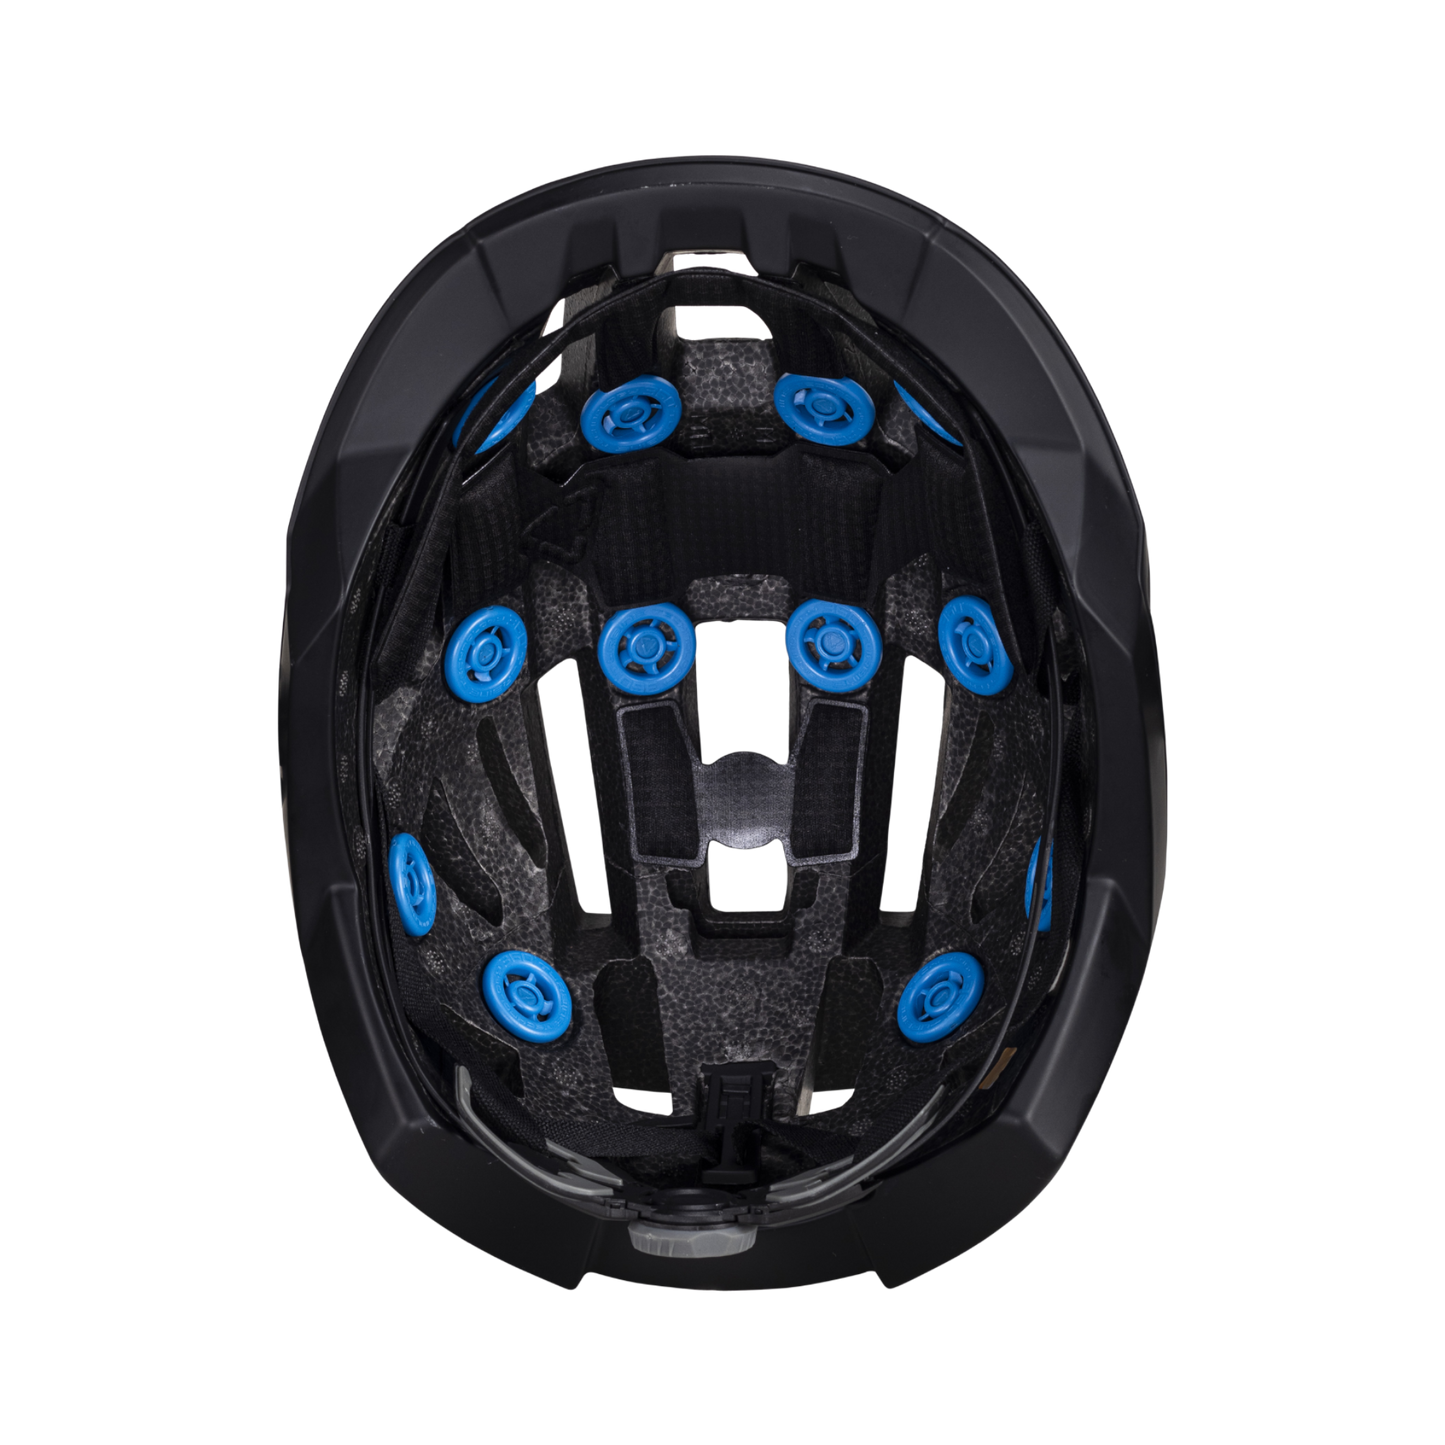 Helmet MTB Endurance 3.0  - Black